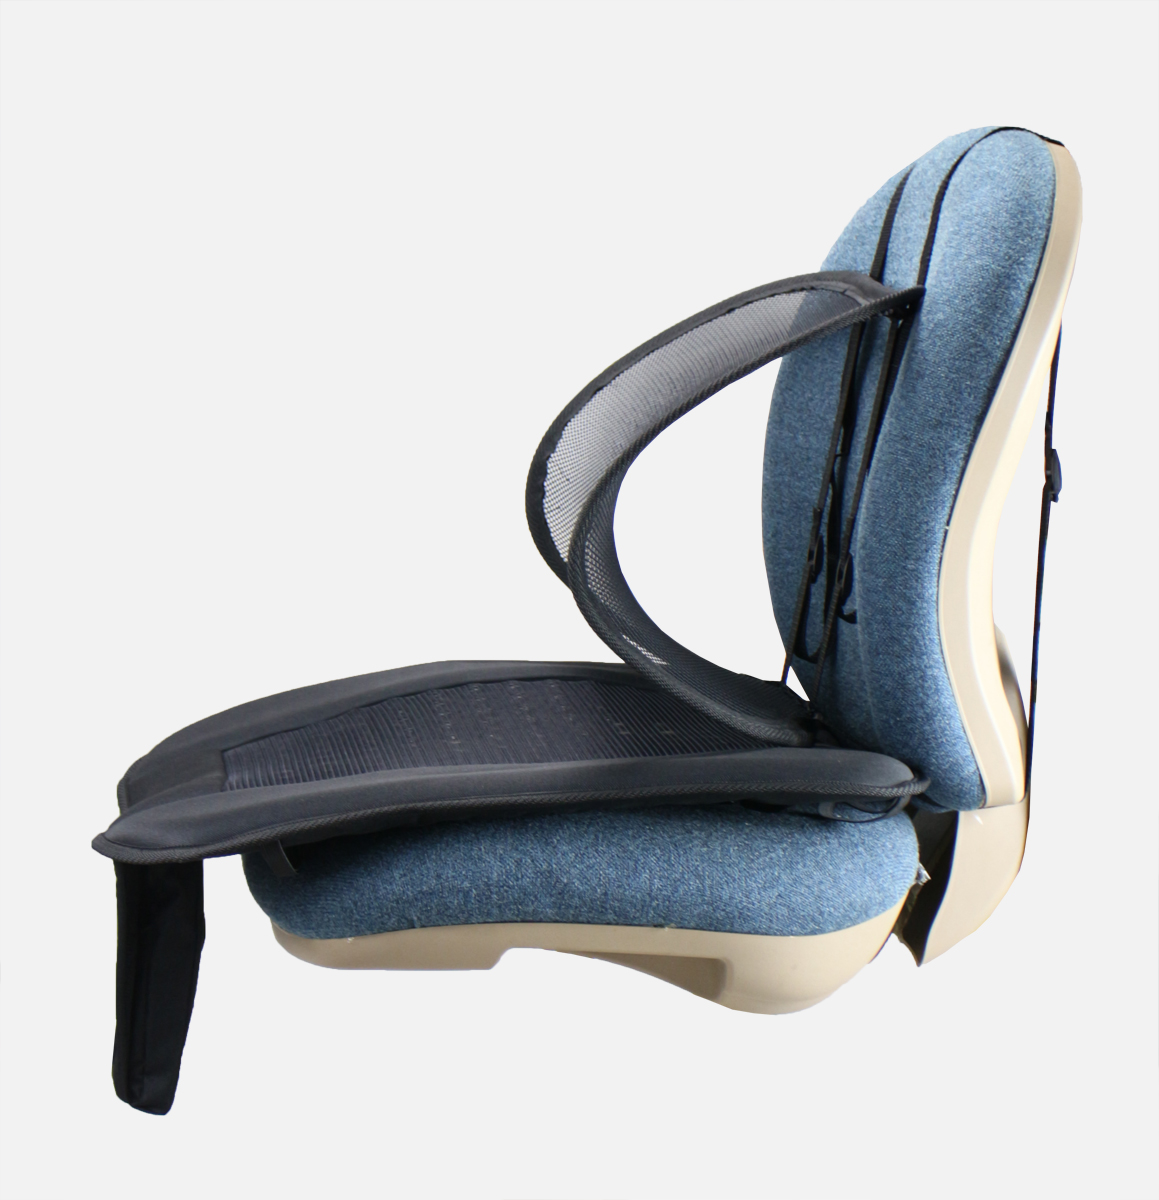 Air Flow Seat Cushion - Truck Seat Cushion